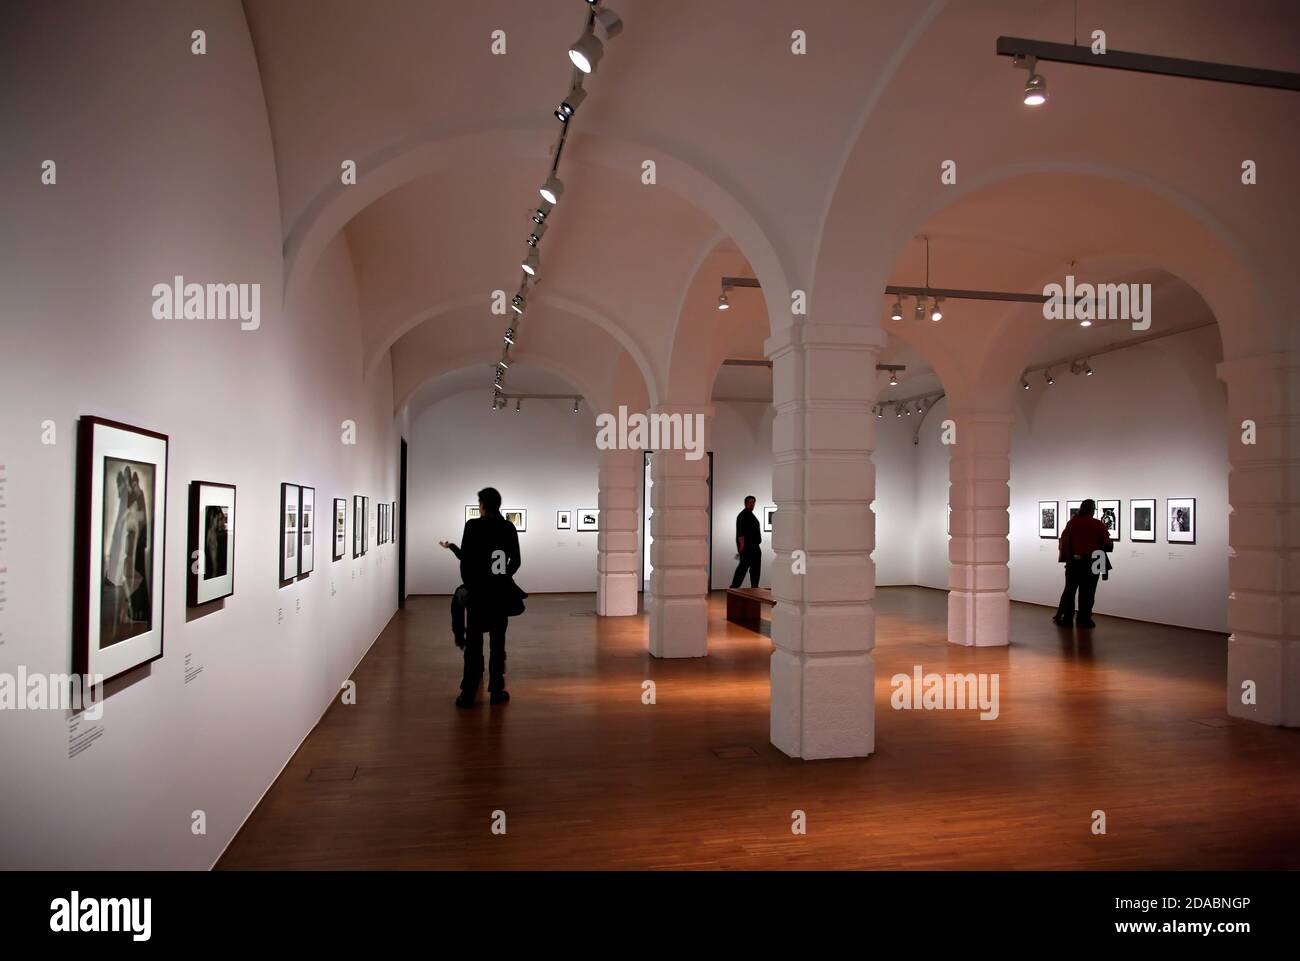 Exposition de photos au musée Albertina, Vienne, Autriche. Banque D'Images